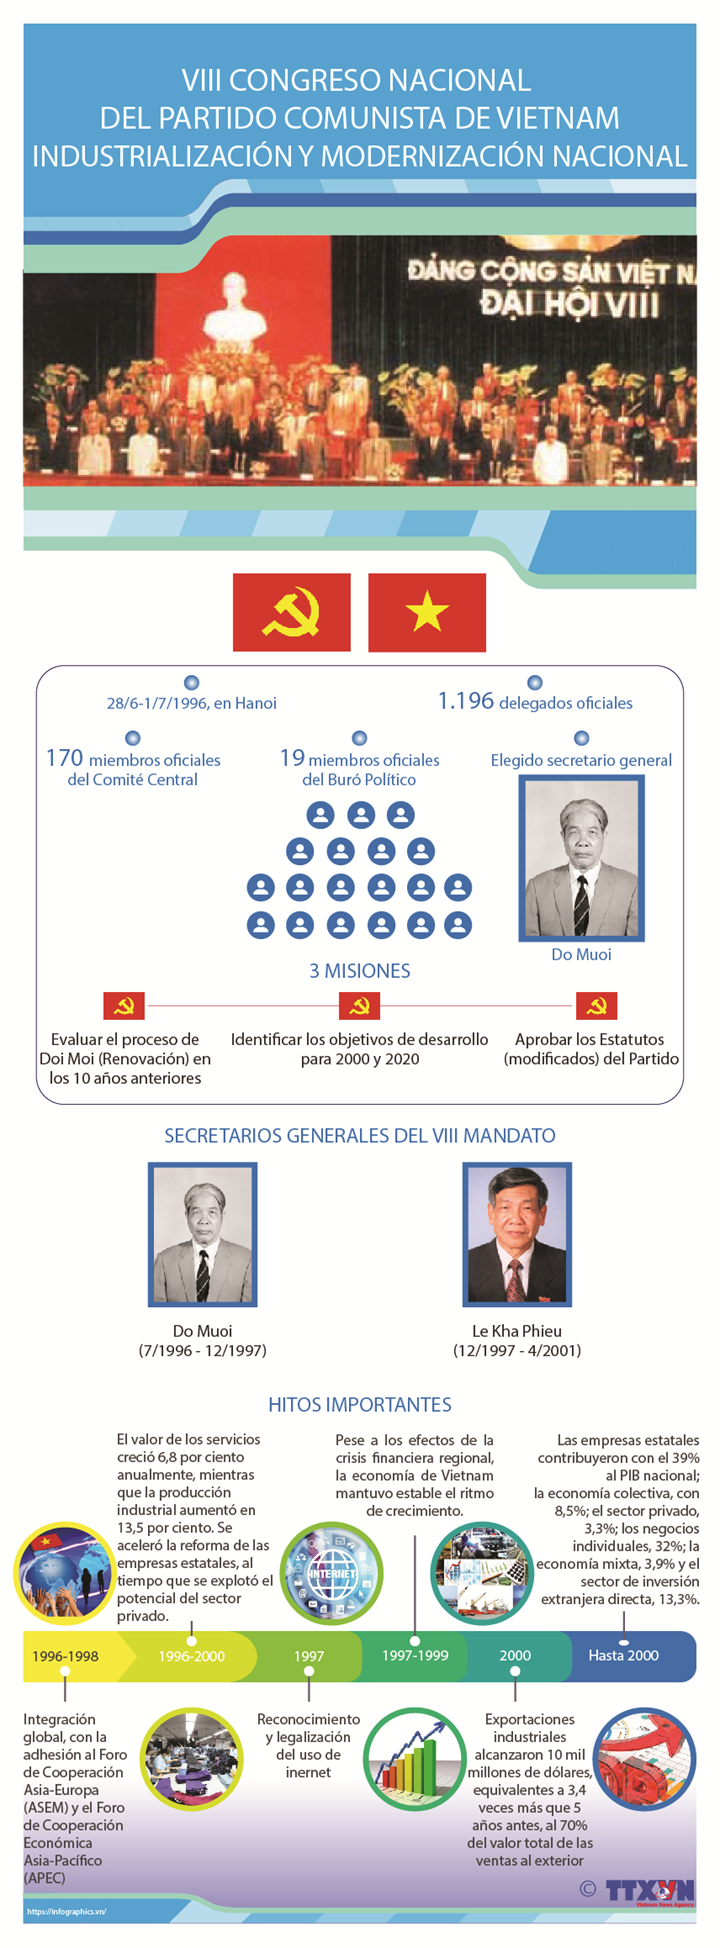 VIII Congreso Nacional del Partido Comunista de Vietnam: Industrialización y modernización nacional